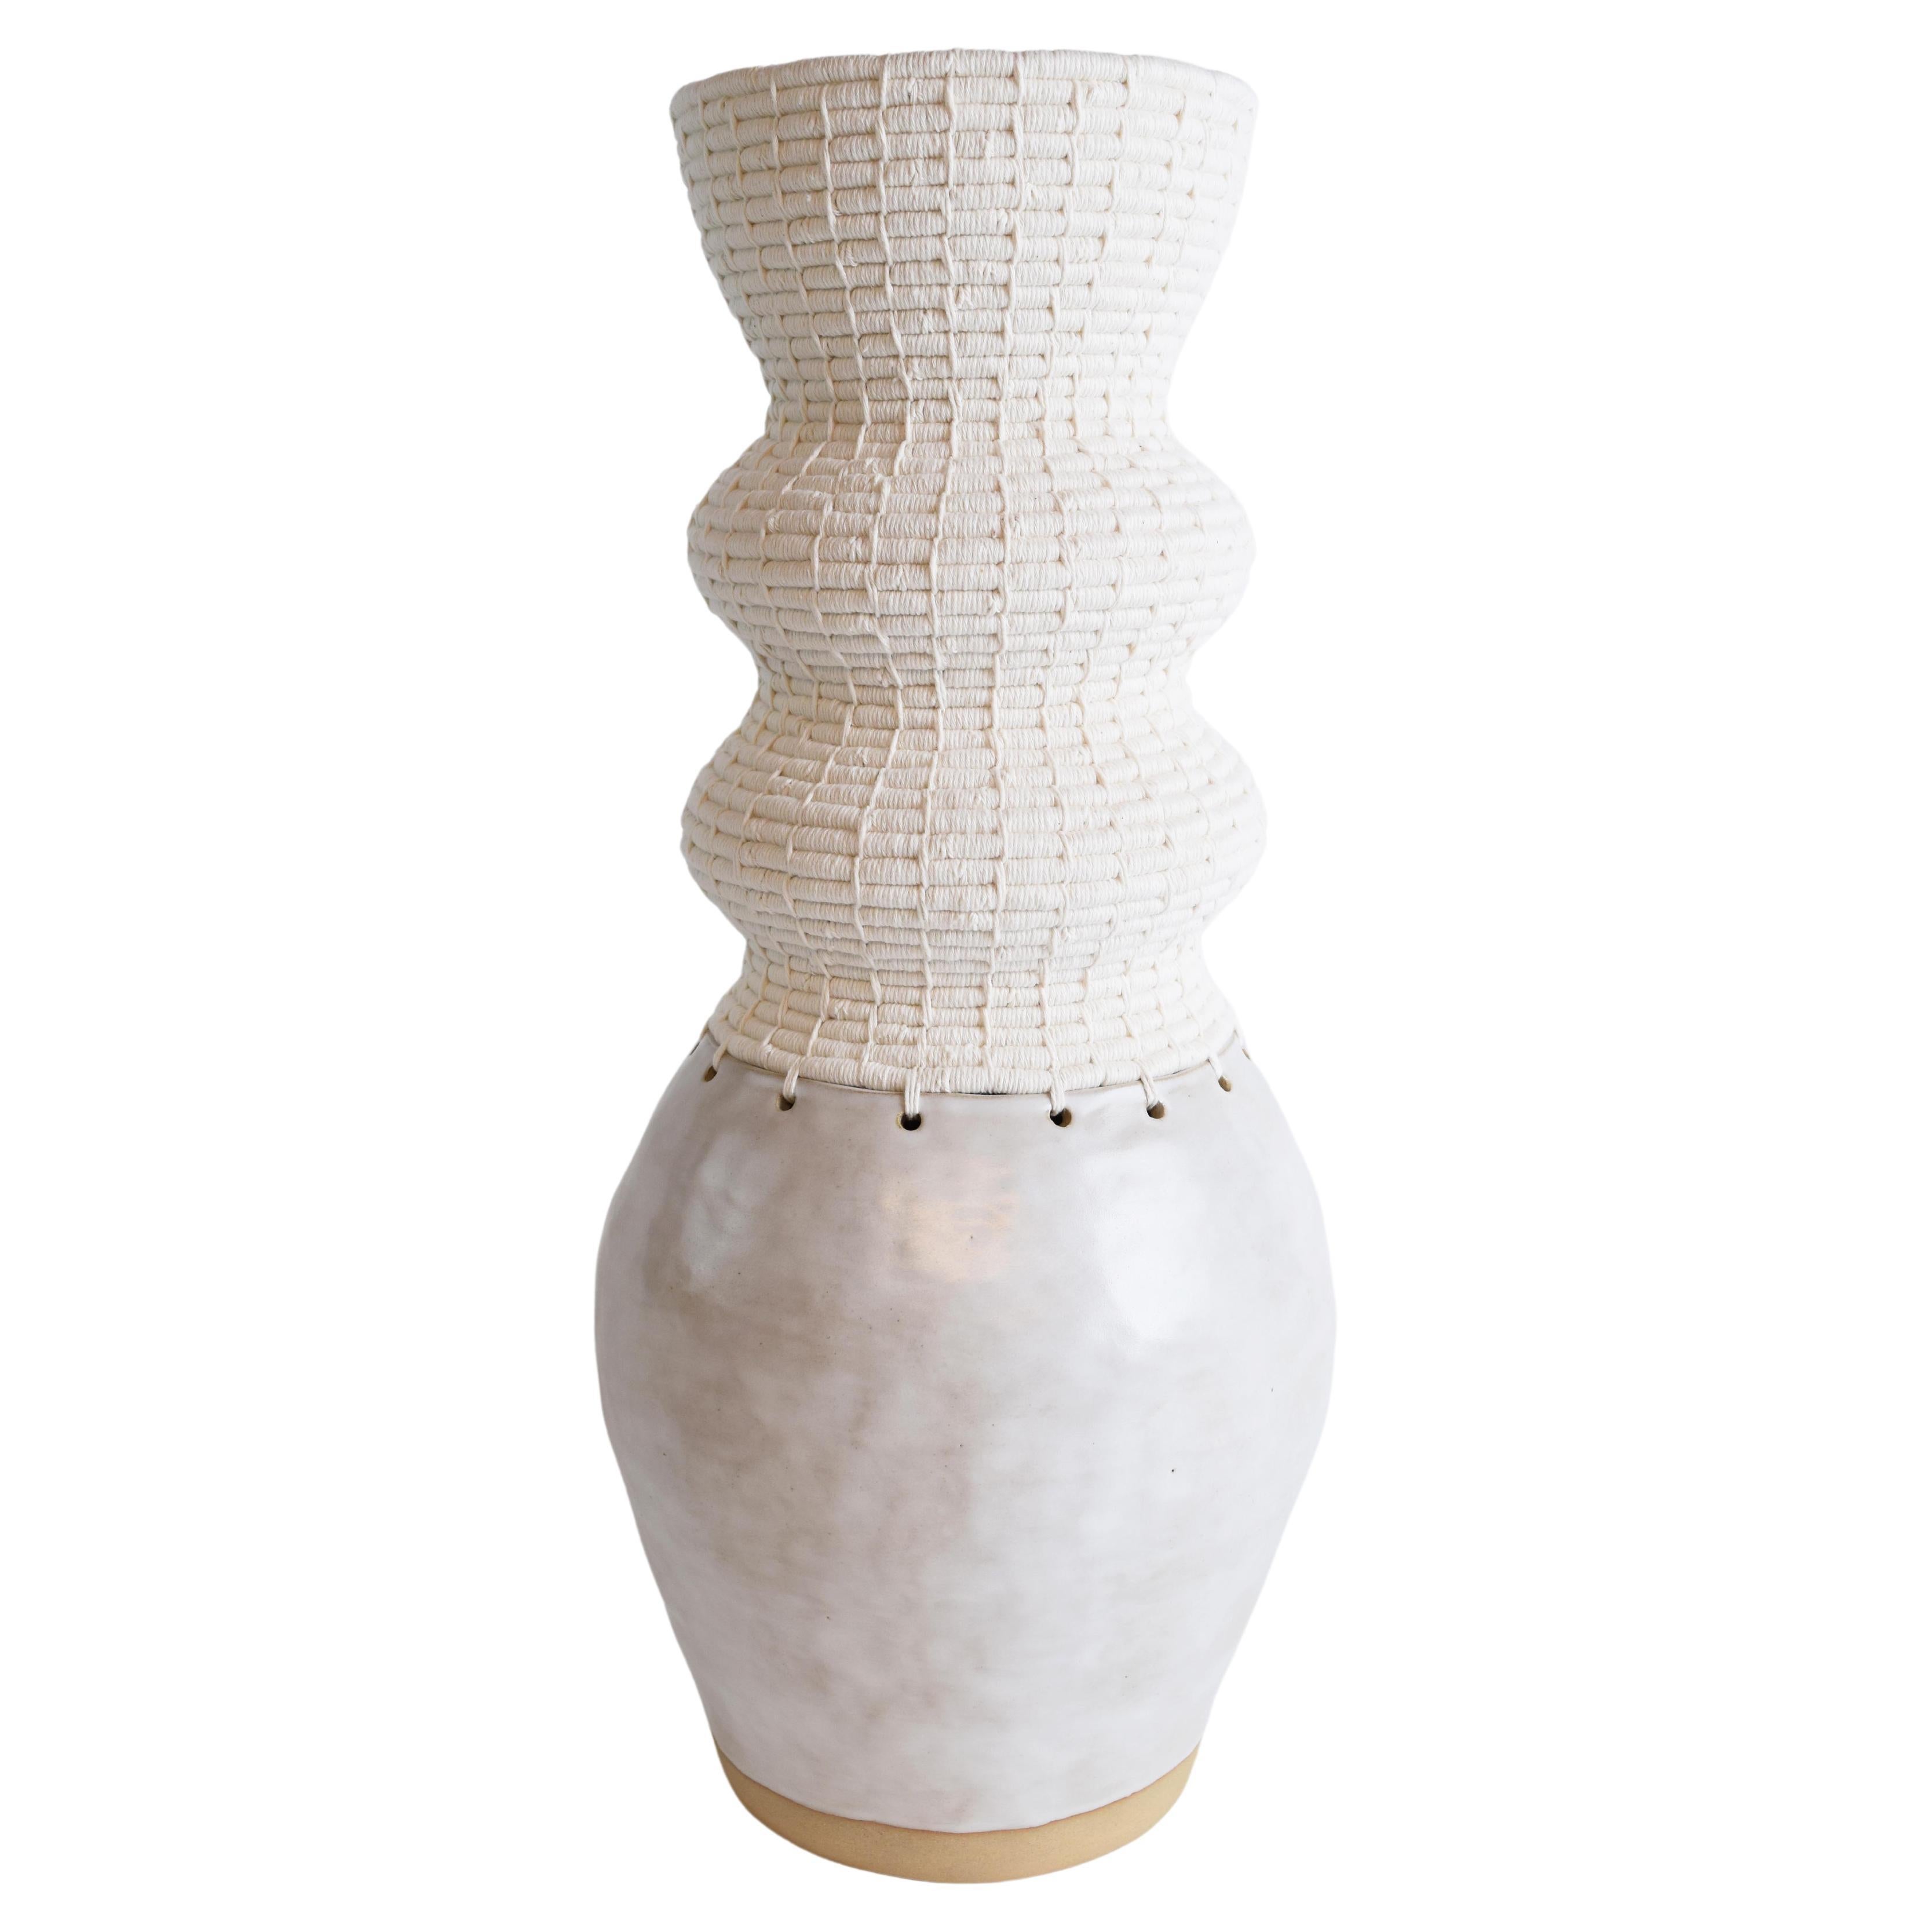 Einzigartiges Keramik- und Fasergefäß #813 aus Keramik  - Weiße Glasur und weiße gewebte Baumwolle